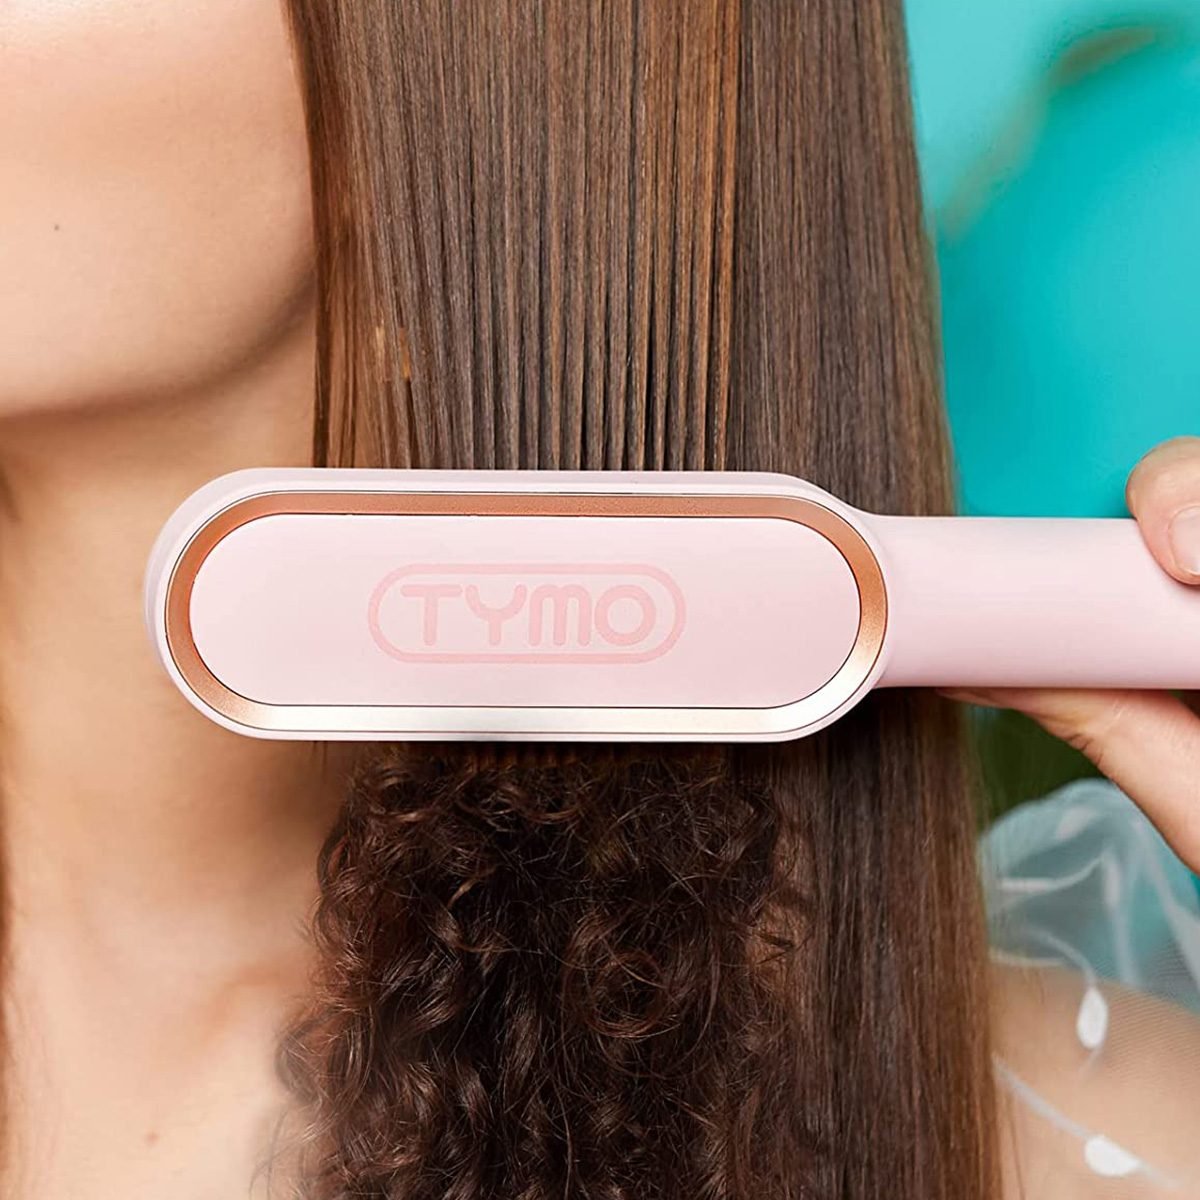 Straightening my natural hair using NEW TYMO RING PLUS 